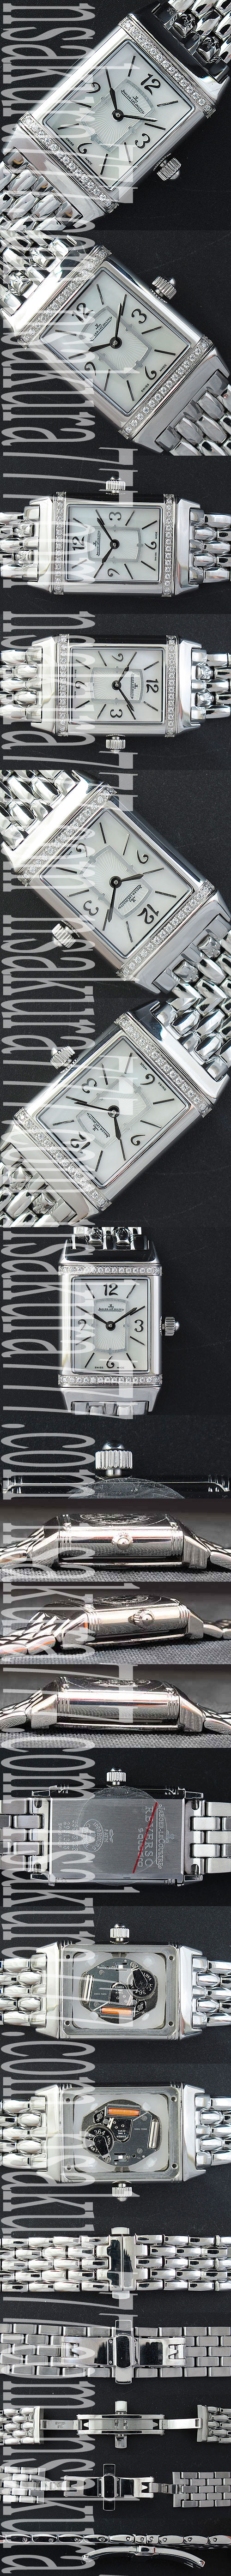 優等レディース腕時計ジャガールクルト316Fステンレス(上下ベゼルダイヤモンド付き)